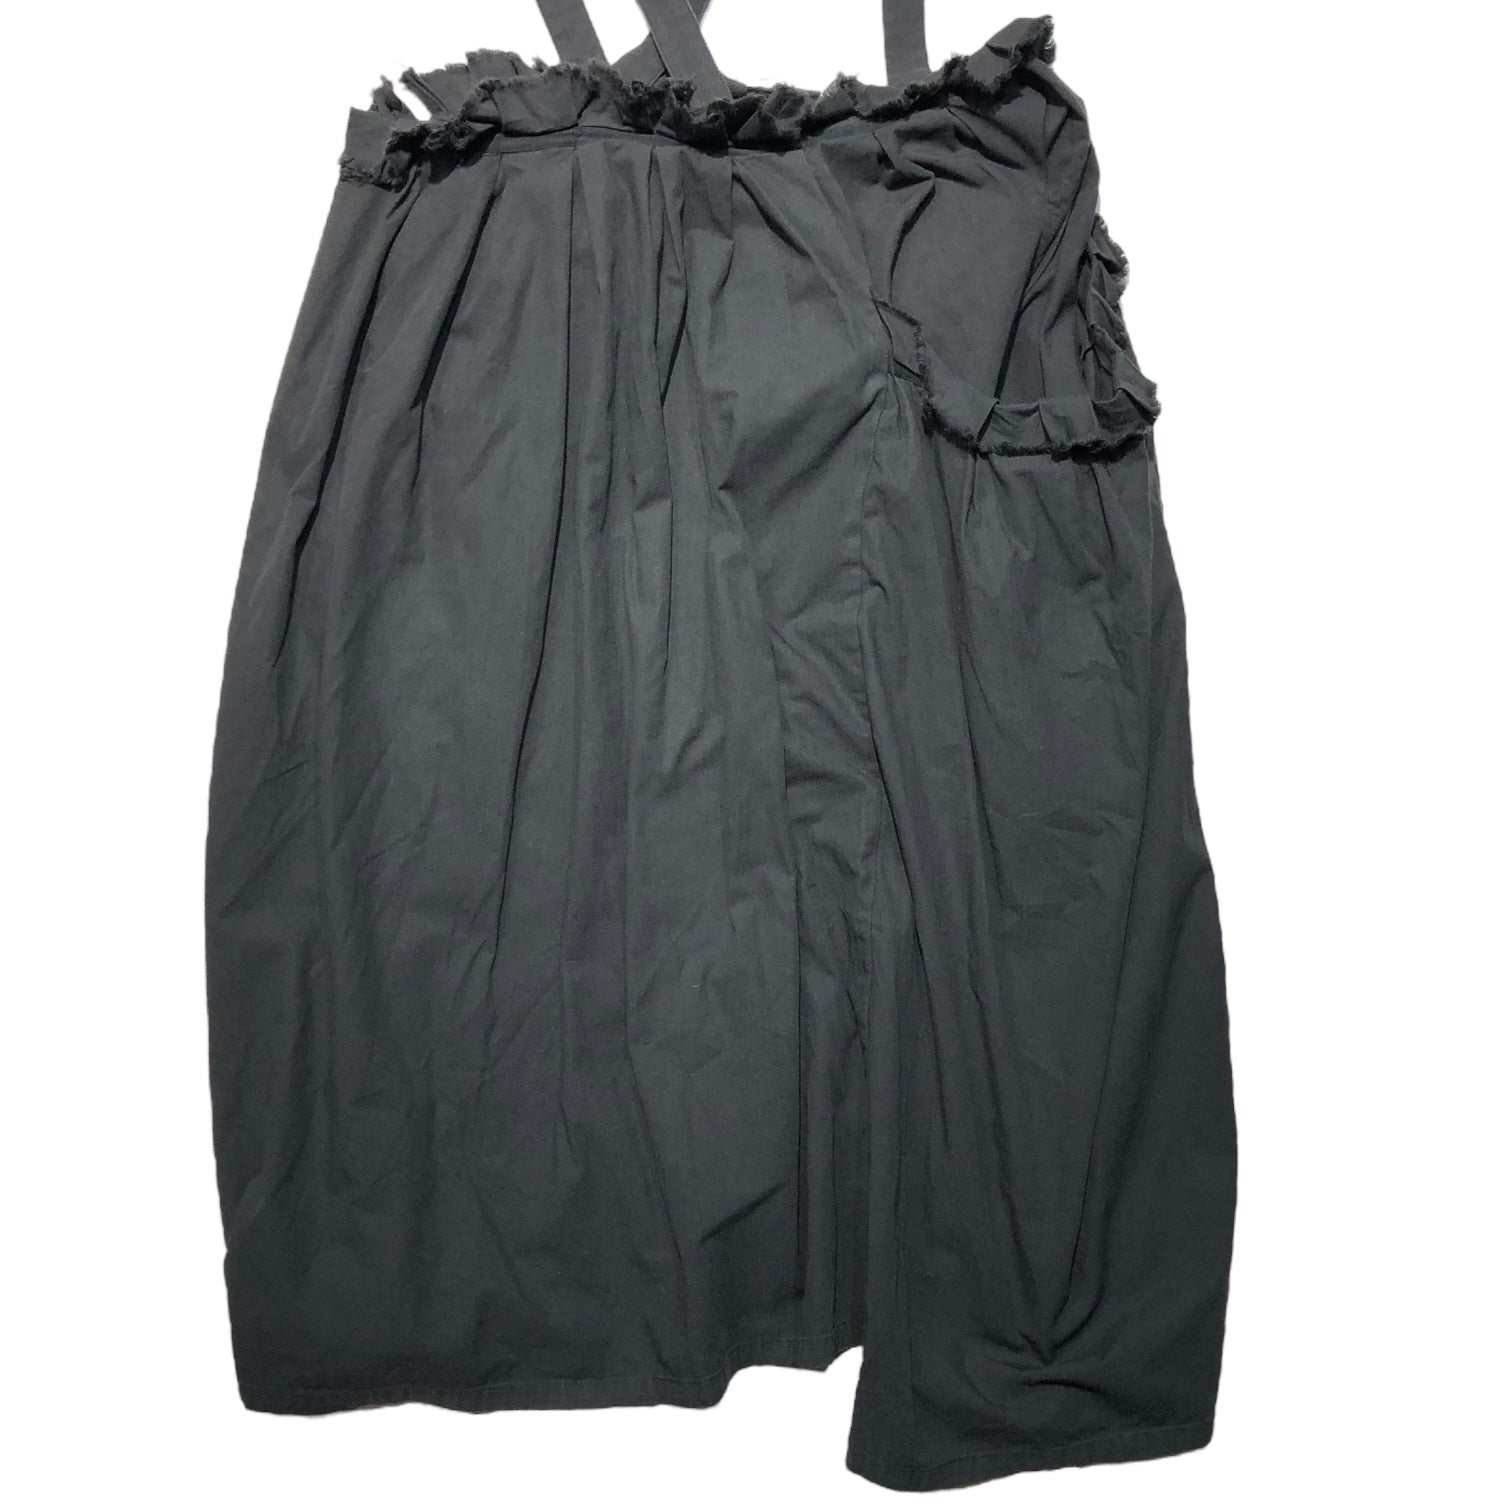 Y's(ワイズ) Raw-cut gathered jumper skirt 切りっぱなし ギャザー ジャンパー スカート YV-S09-009 2(M程度) ブラック サロペット